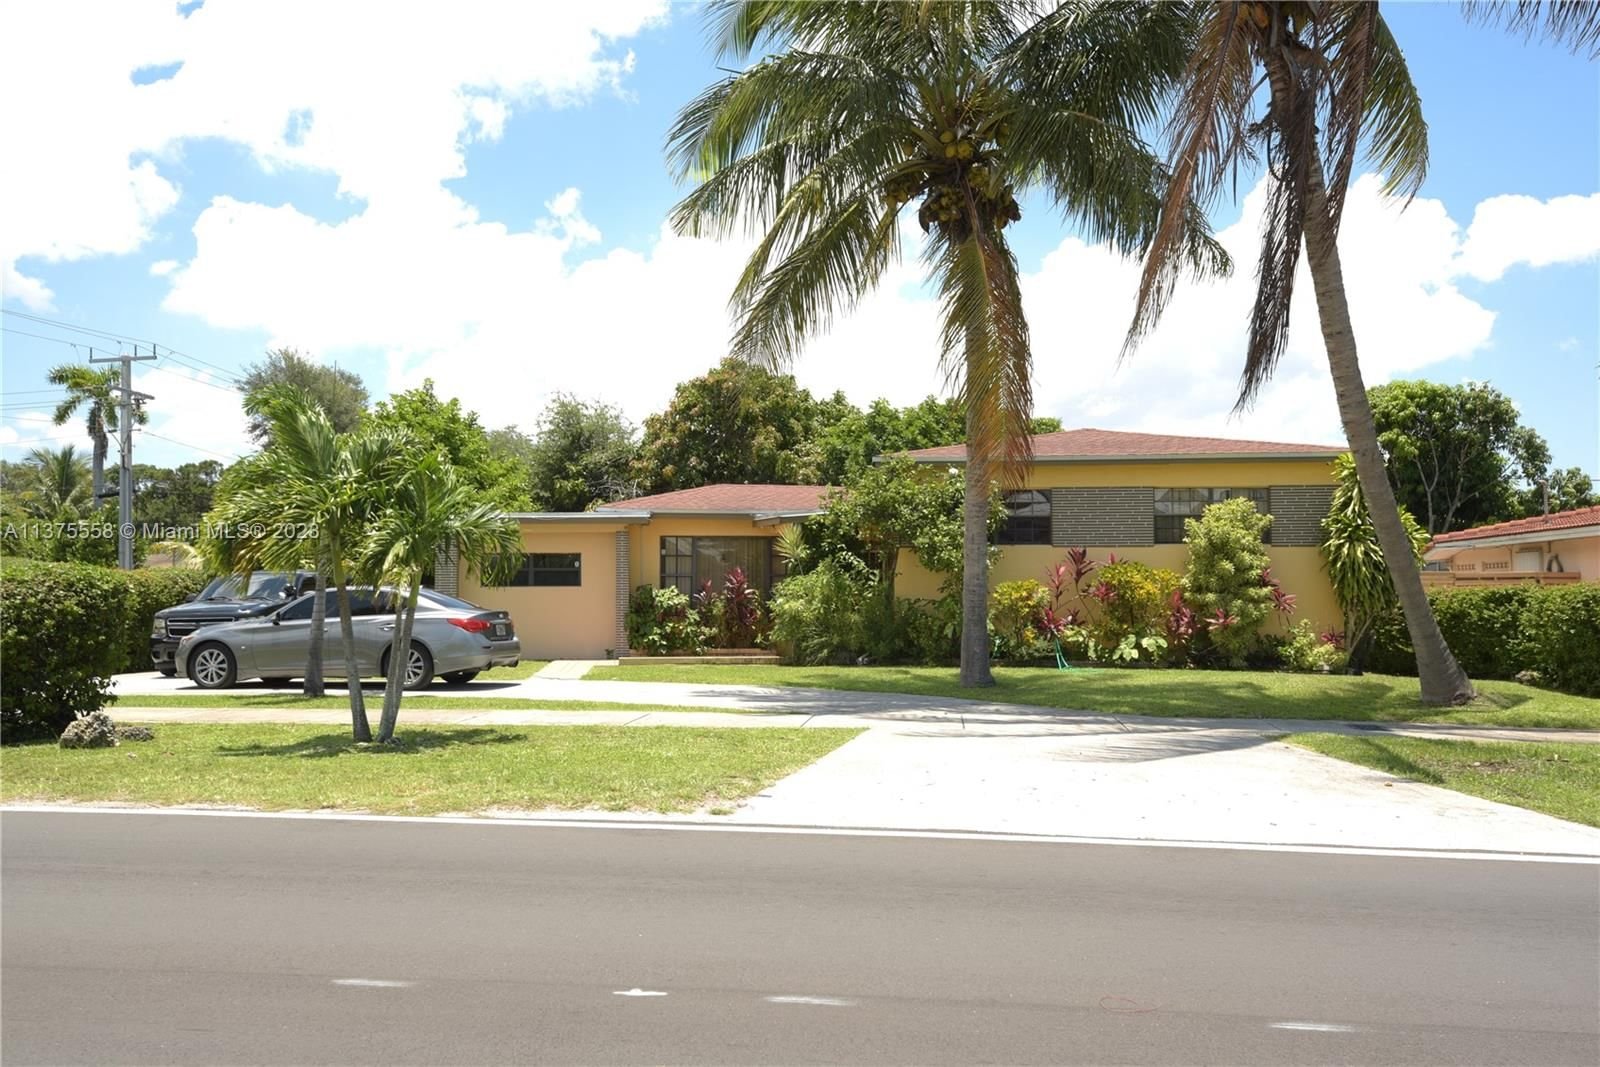 Real estate property located at 701 159th St, Miami-Dade County, PLEASANT VILLAGE, Miami, FL